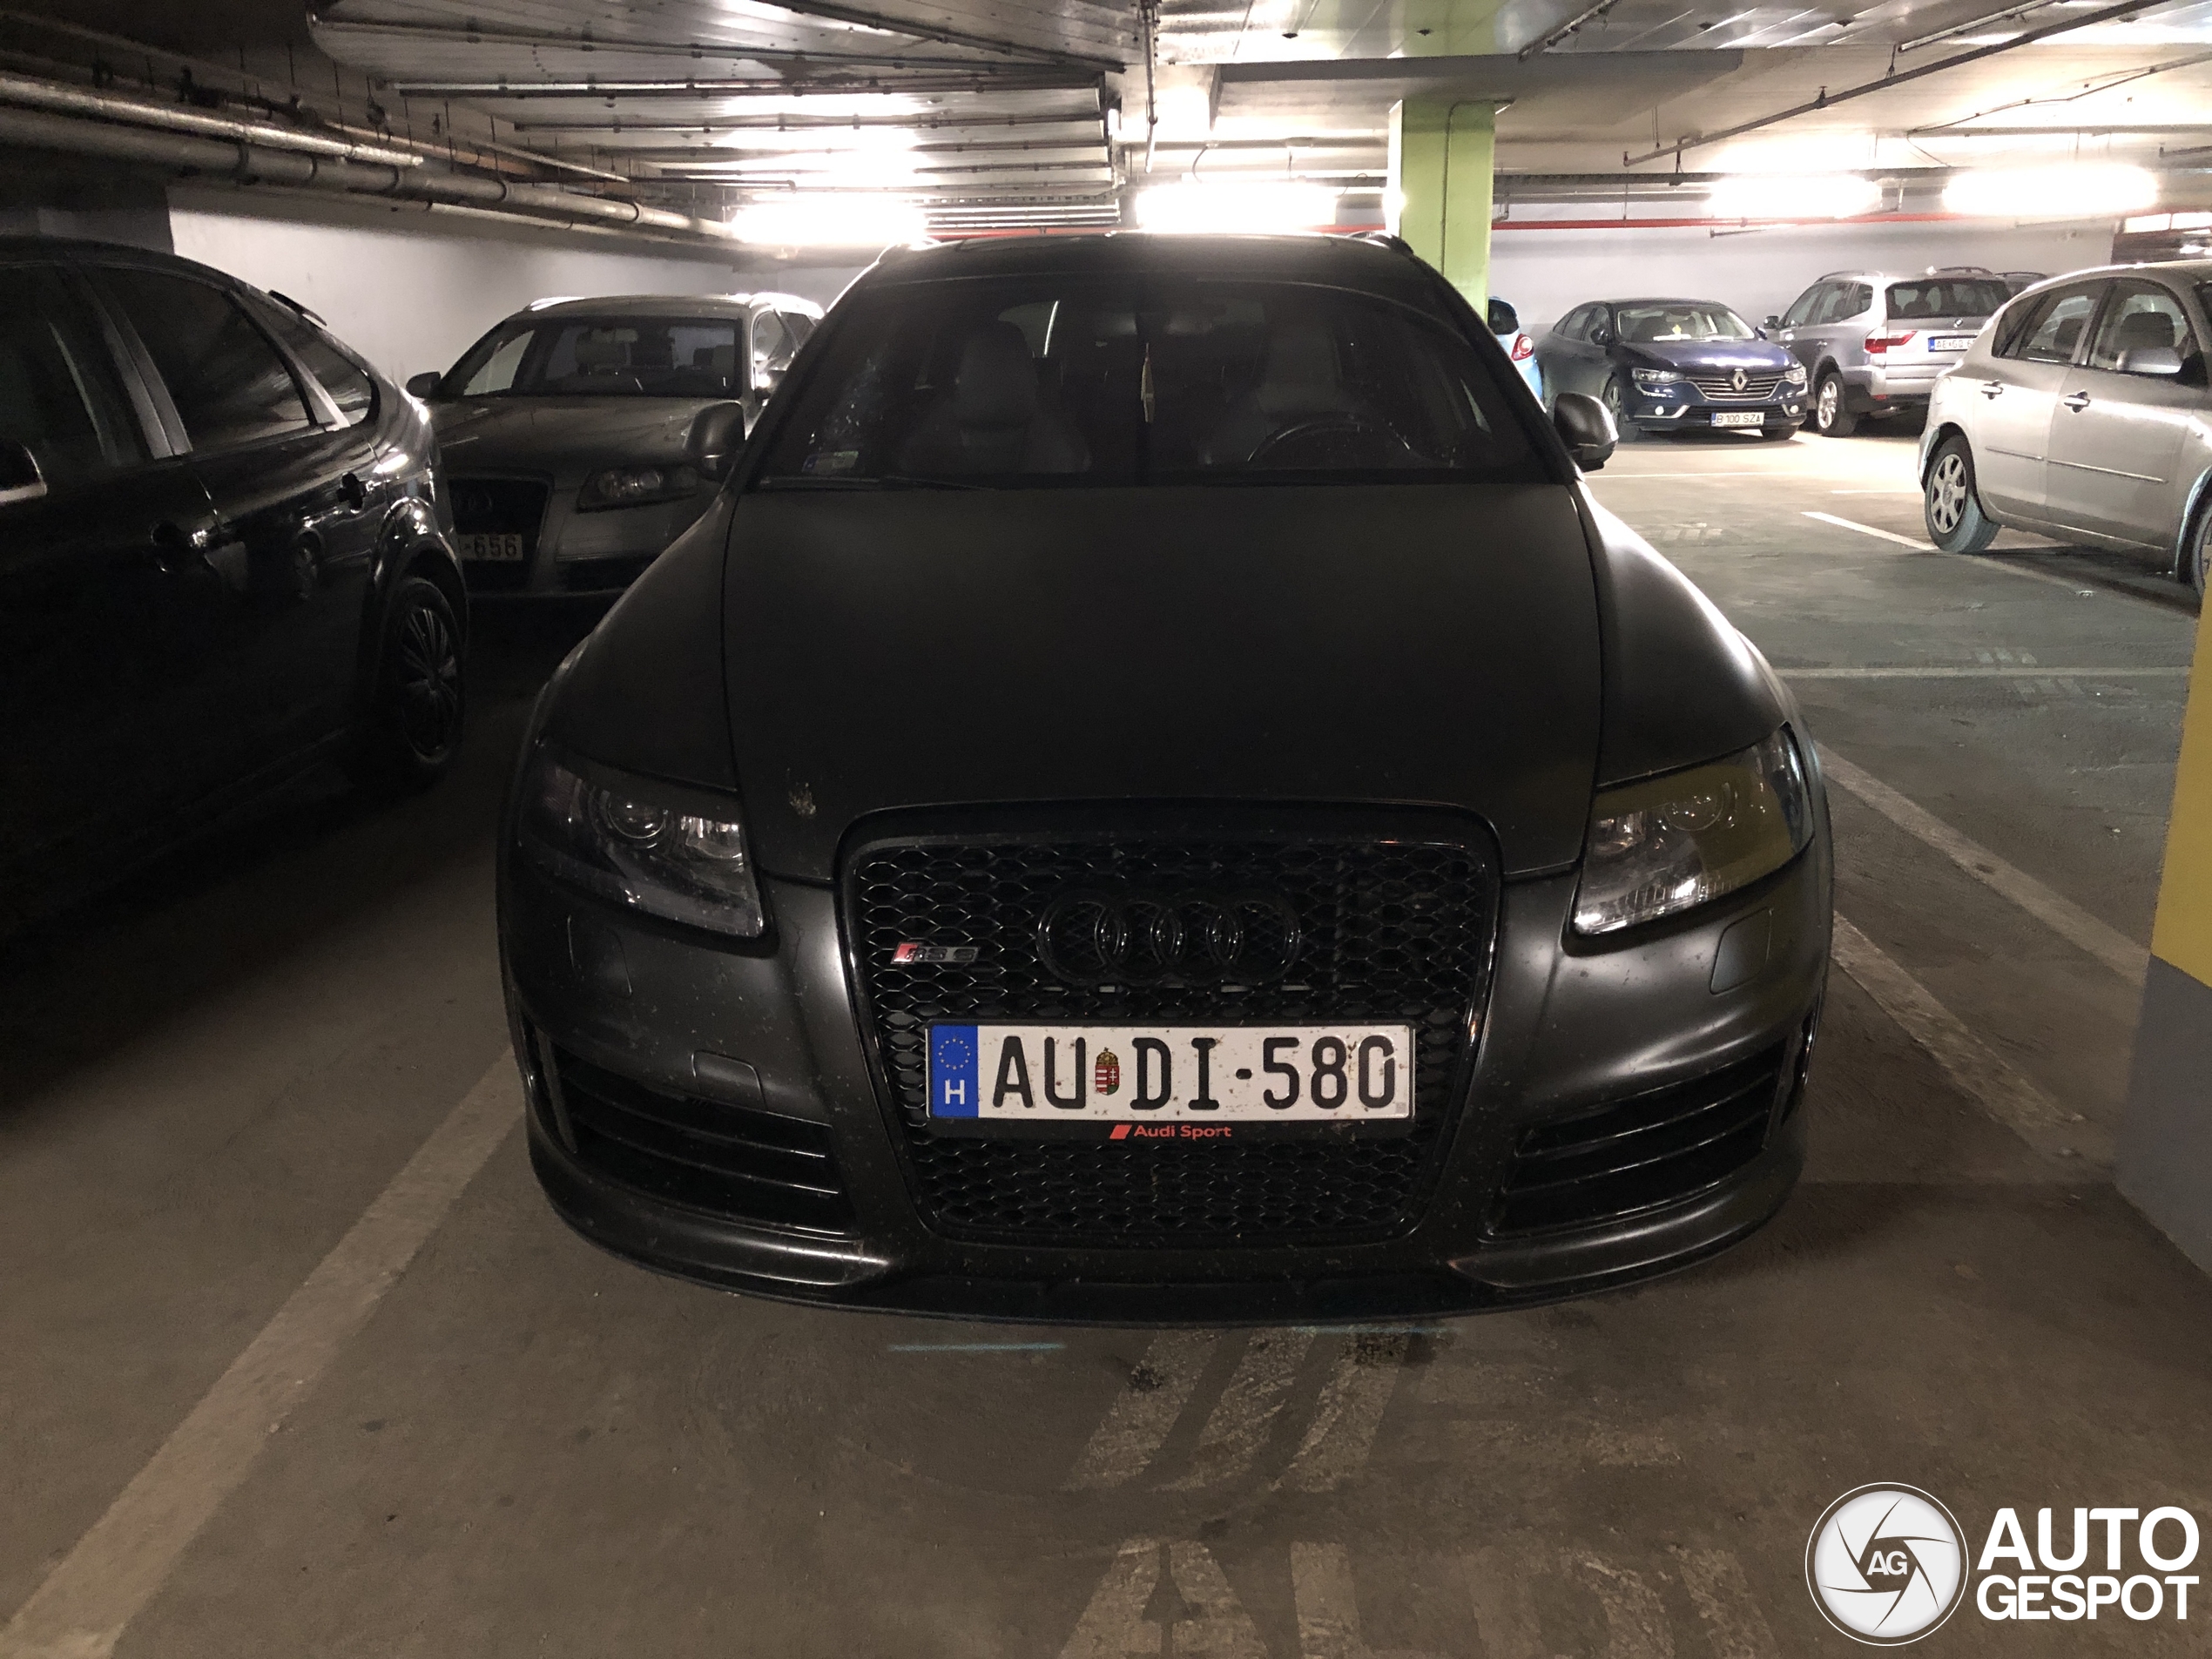 luxury Fußmatten für Audi A6 C6 Avant